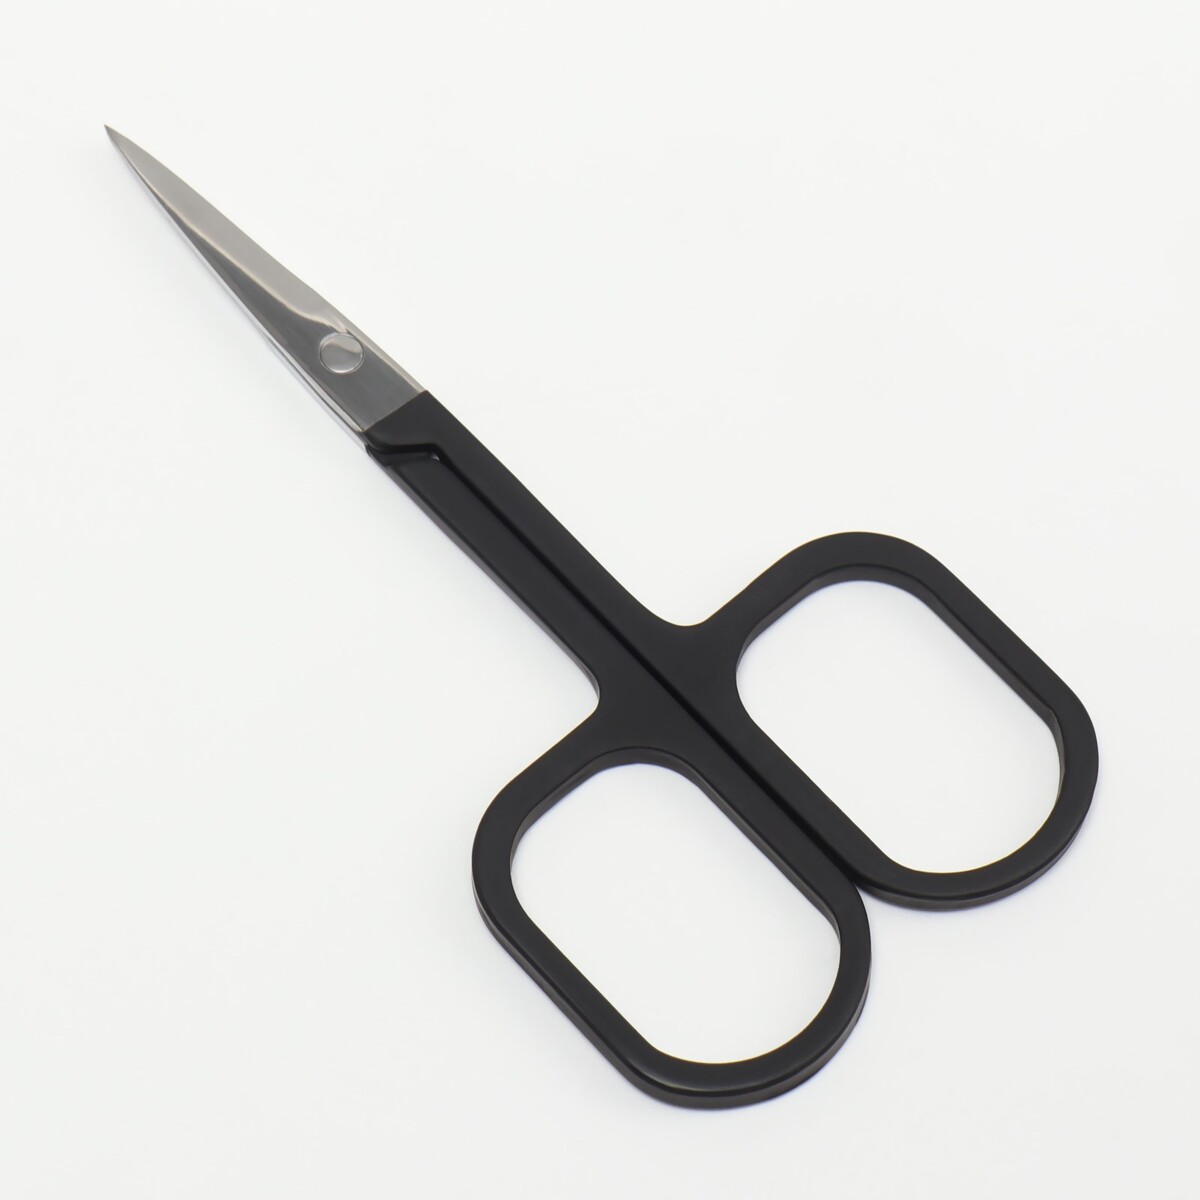 Ножницы маникюрные, узкие, прямые, с прорезиненными ручками, 9 см, цвет серебристый/черный ножницы маникюрные прямые узкие 9 см серебристый